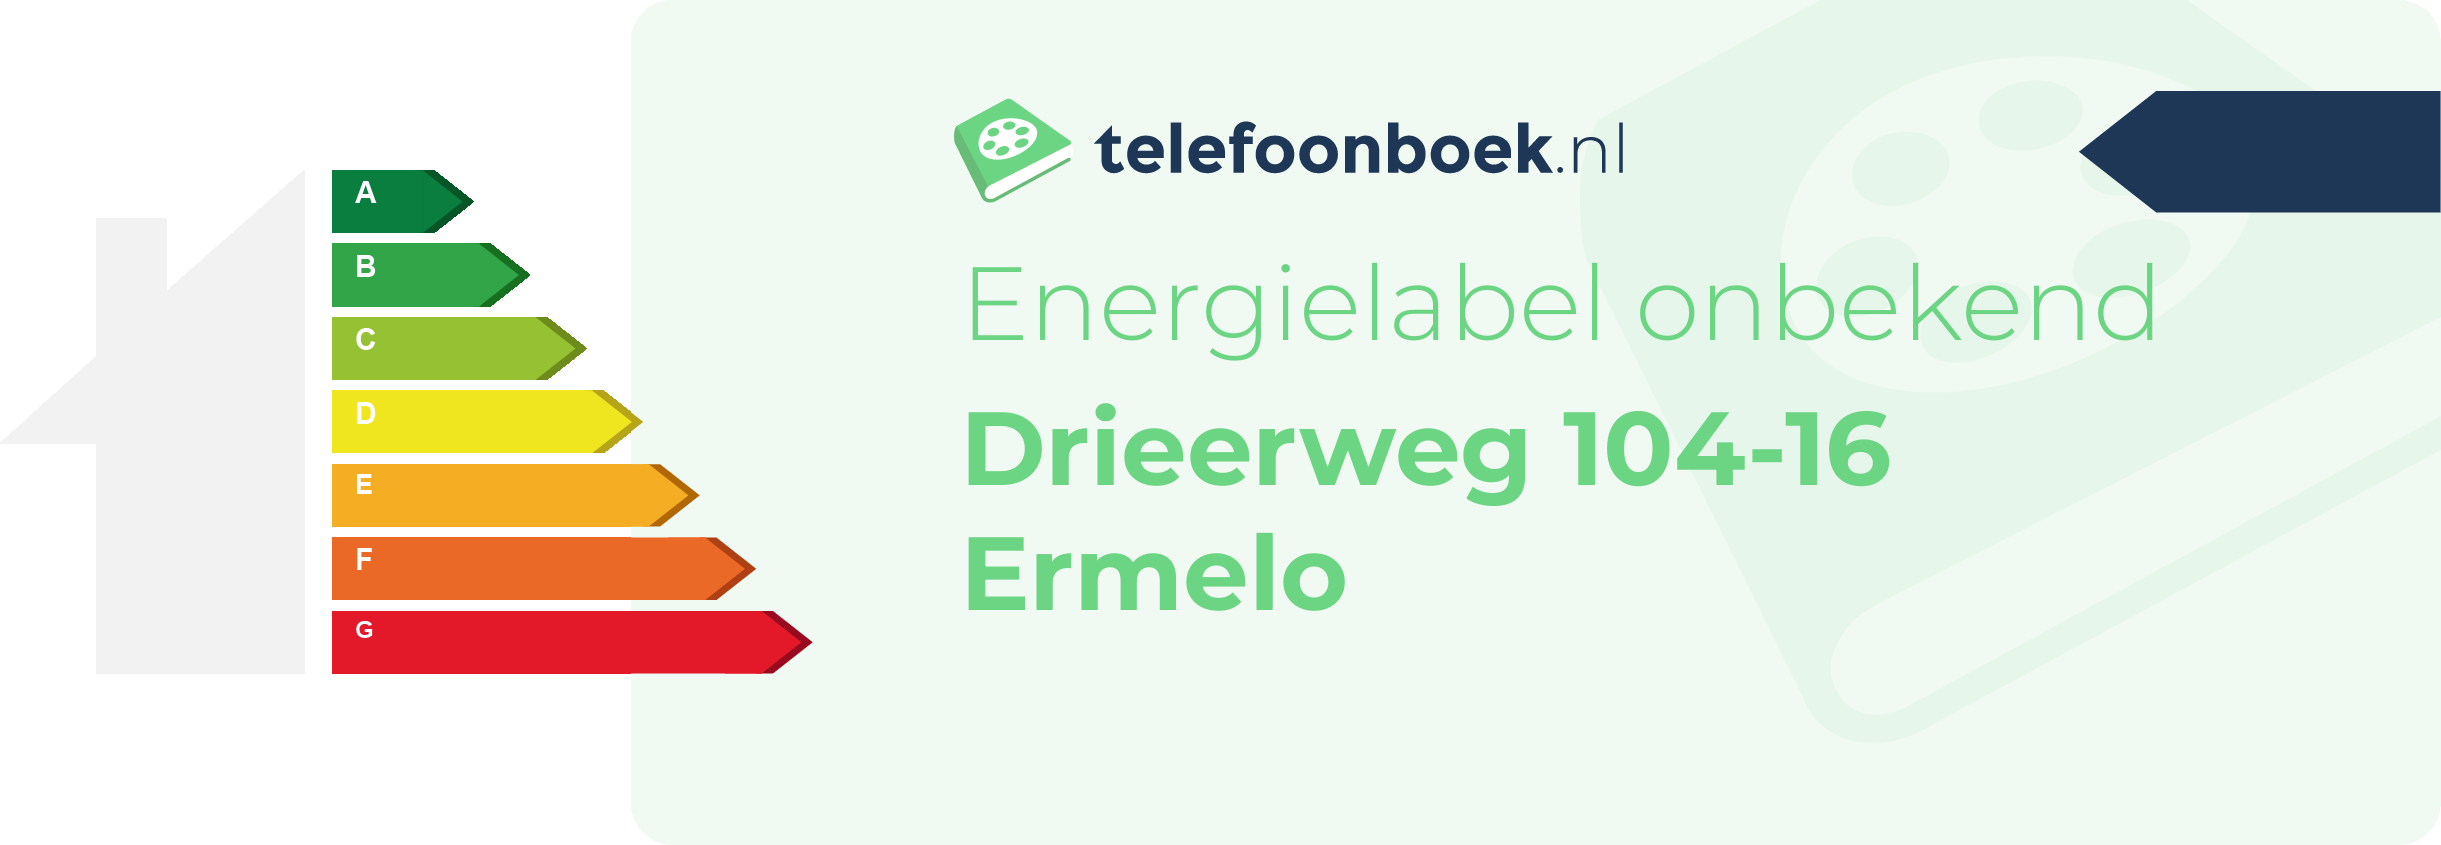 Energielabel Drieerweg 104-16 Ermelo